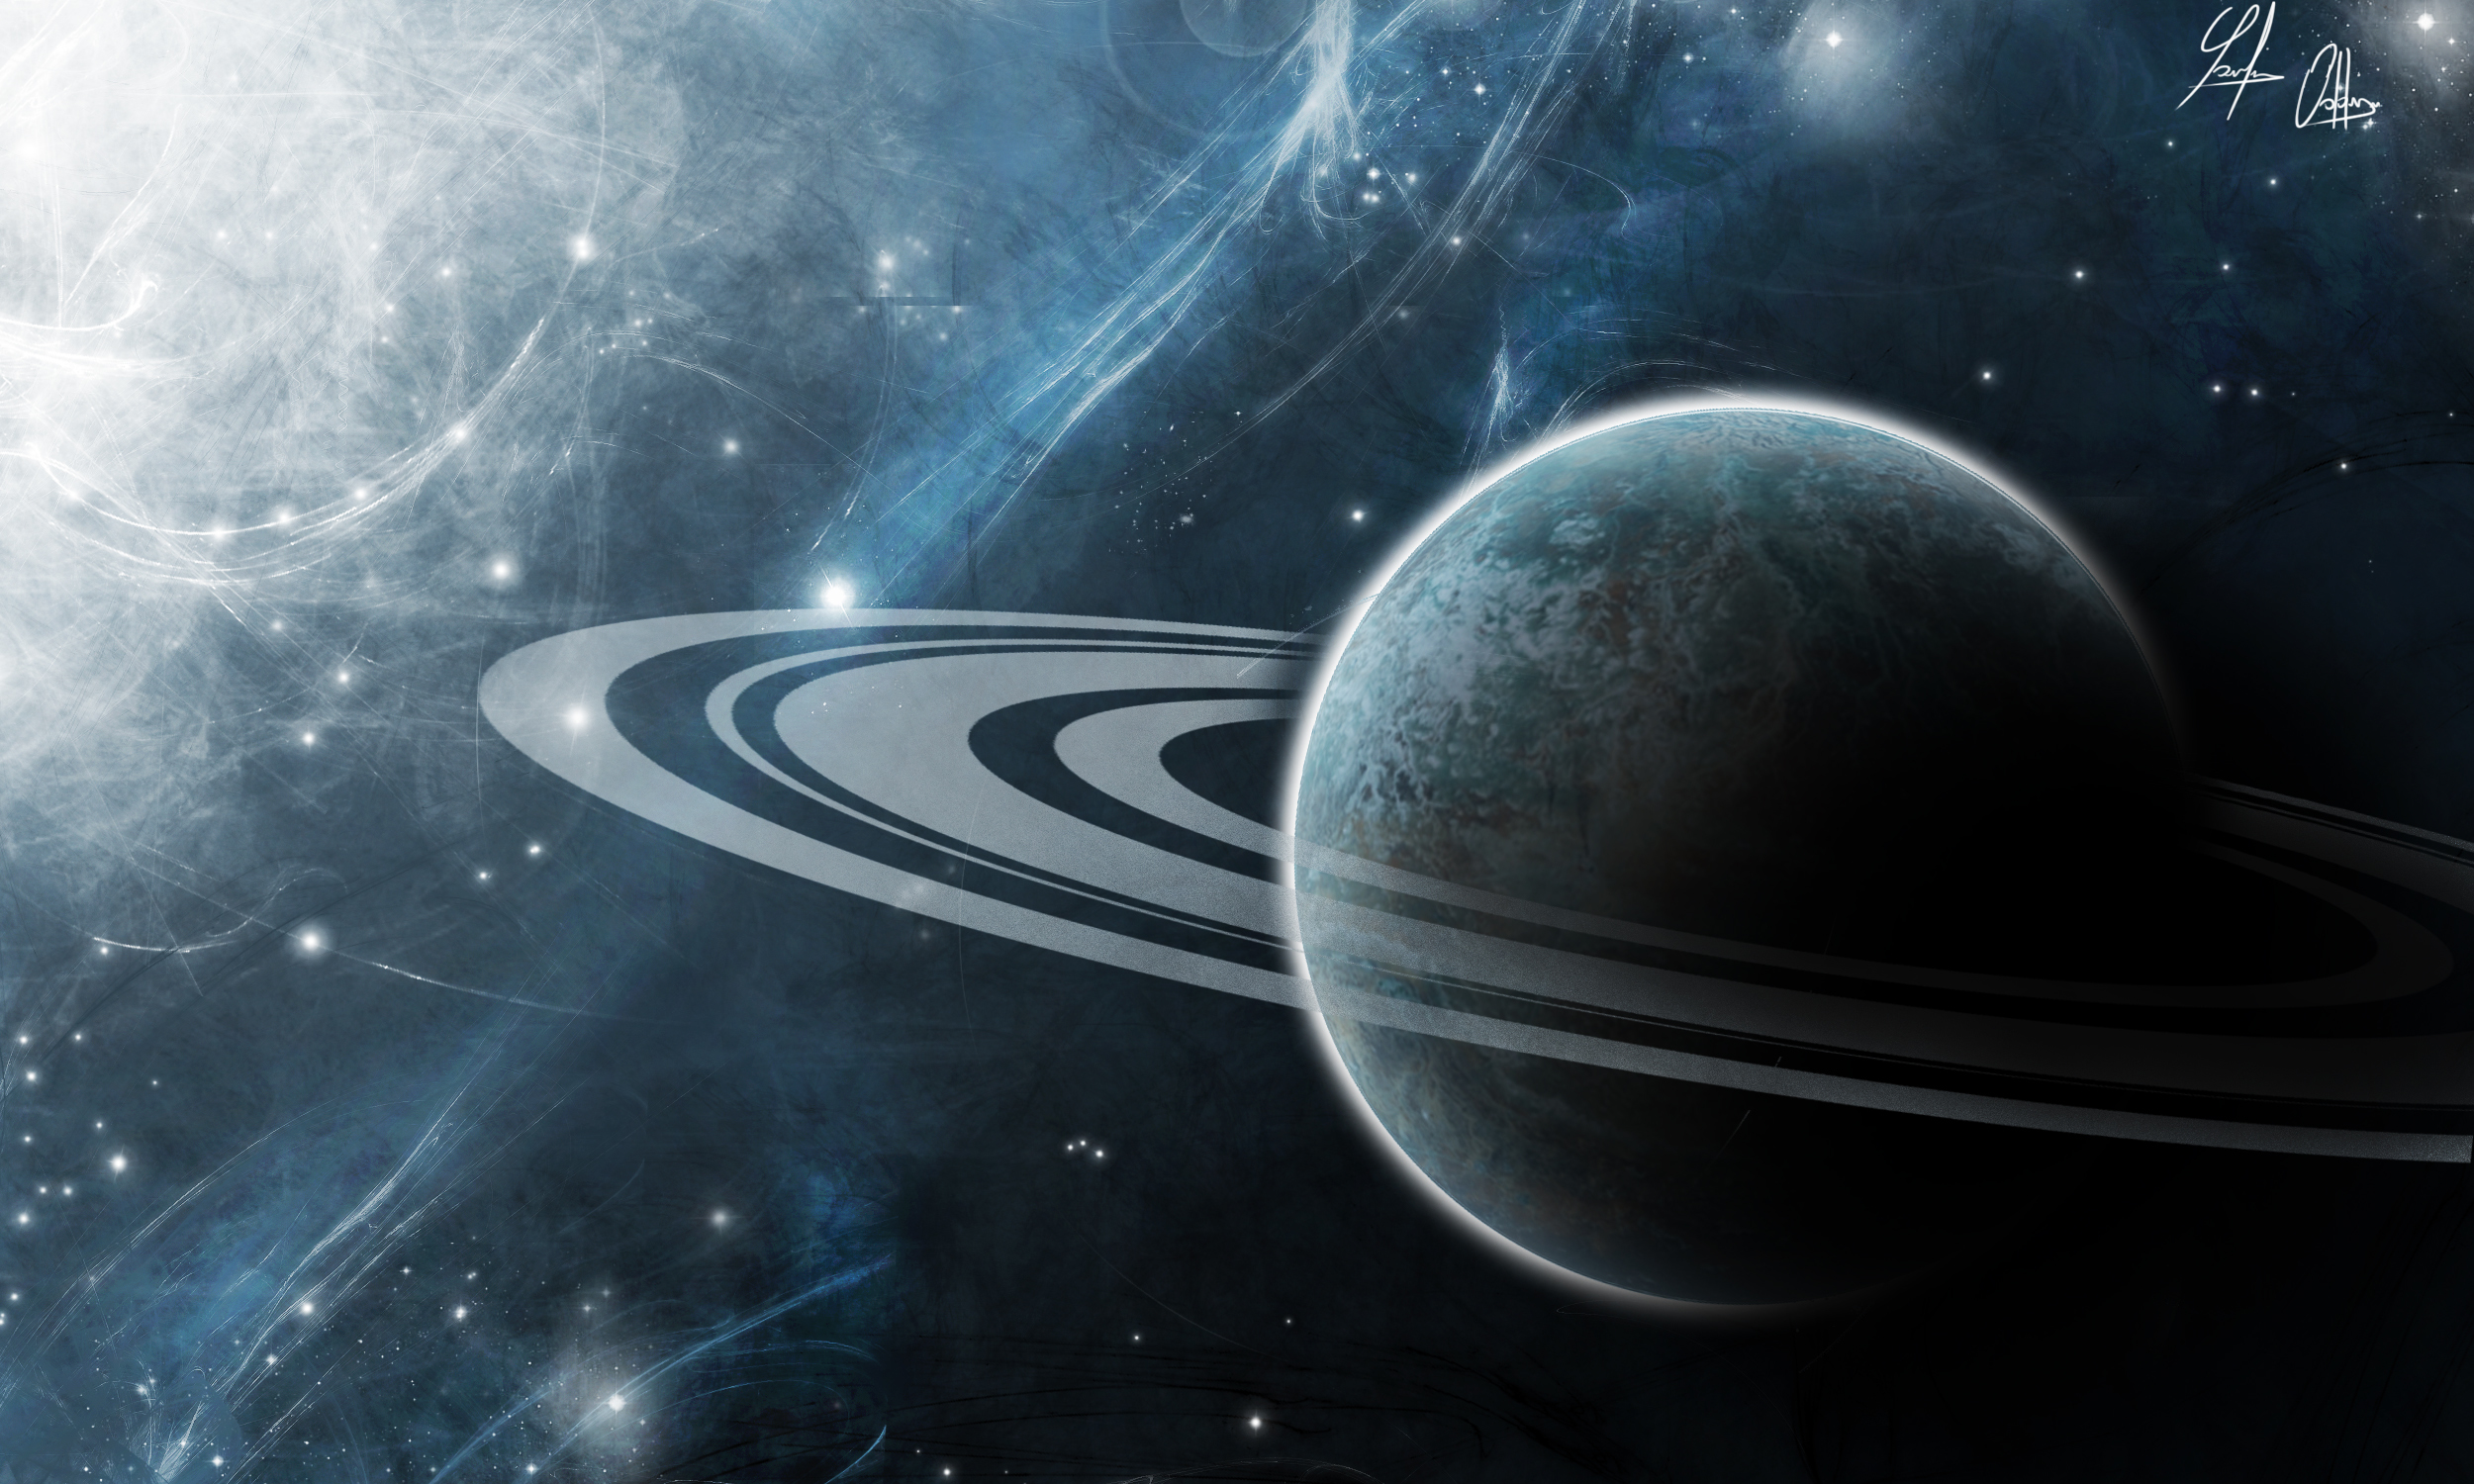 Обои Планета сатурн картинки на рабочий стол на тему Космос - скачать без смс